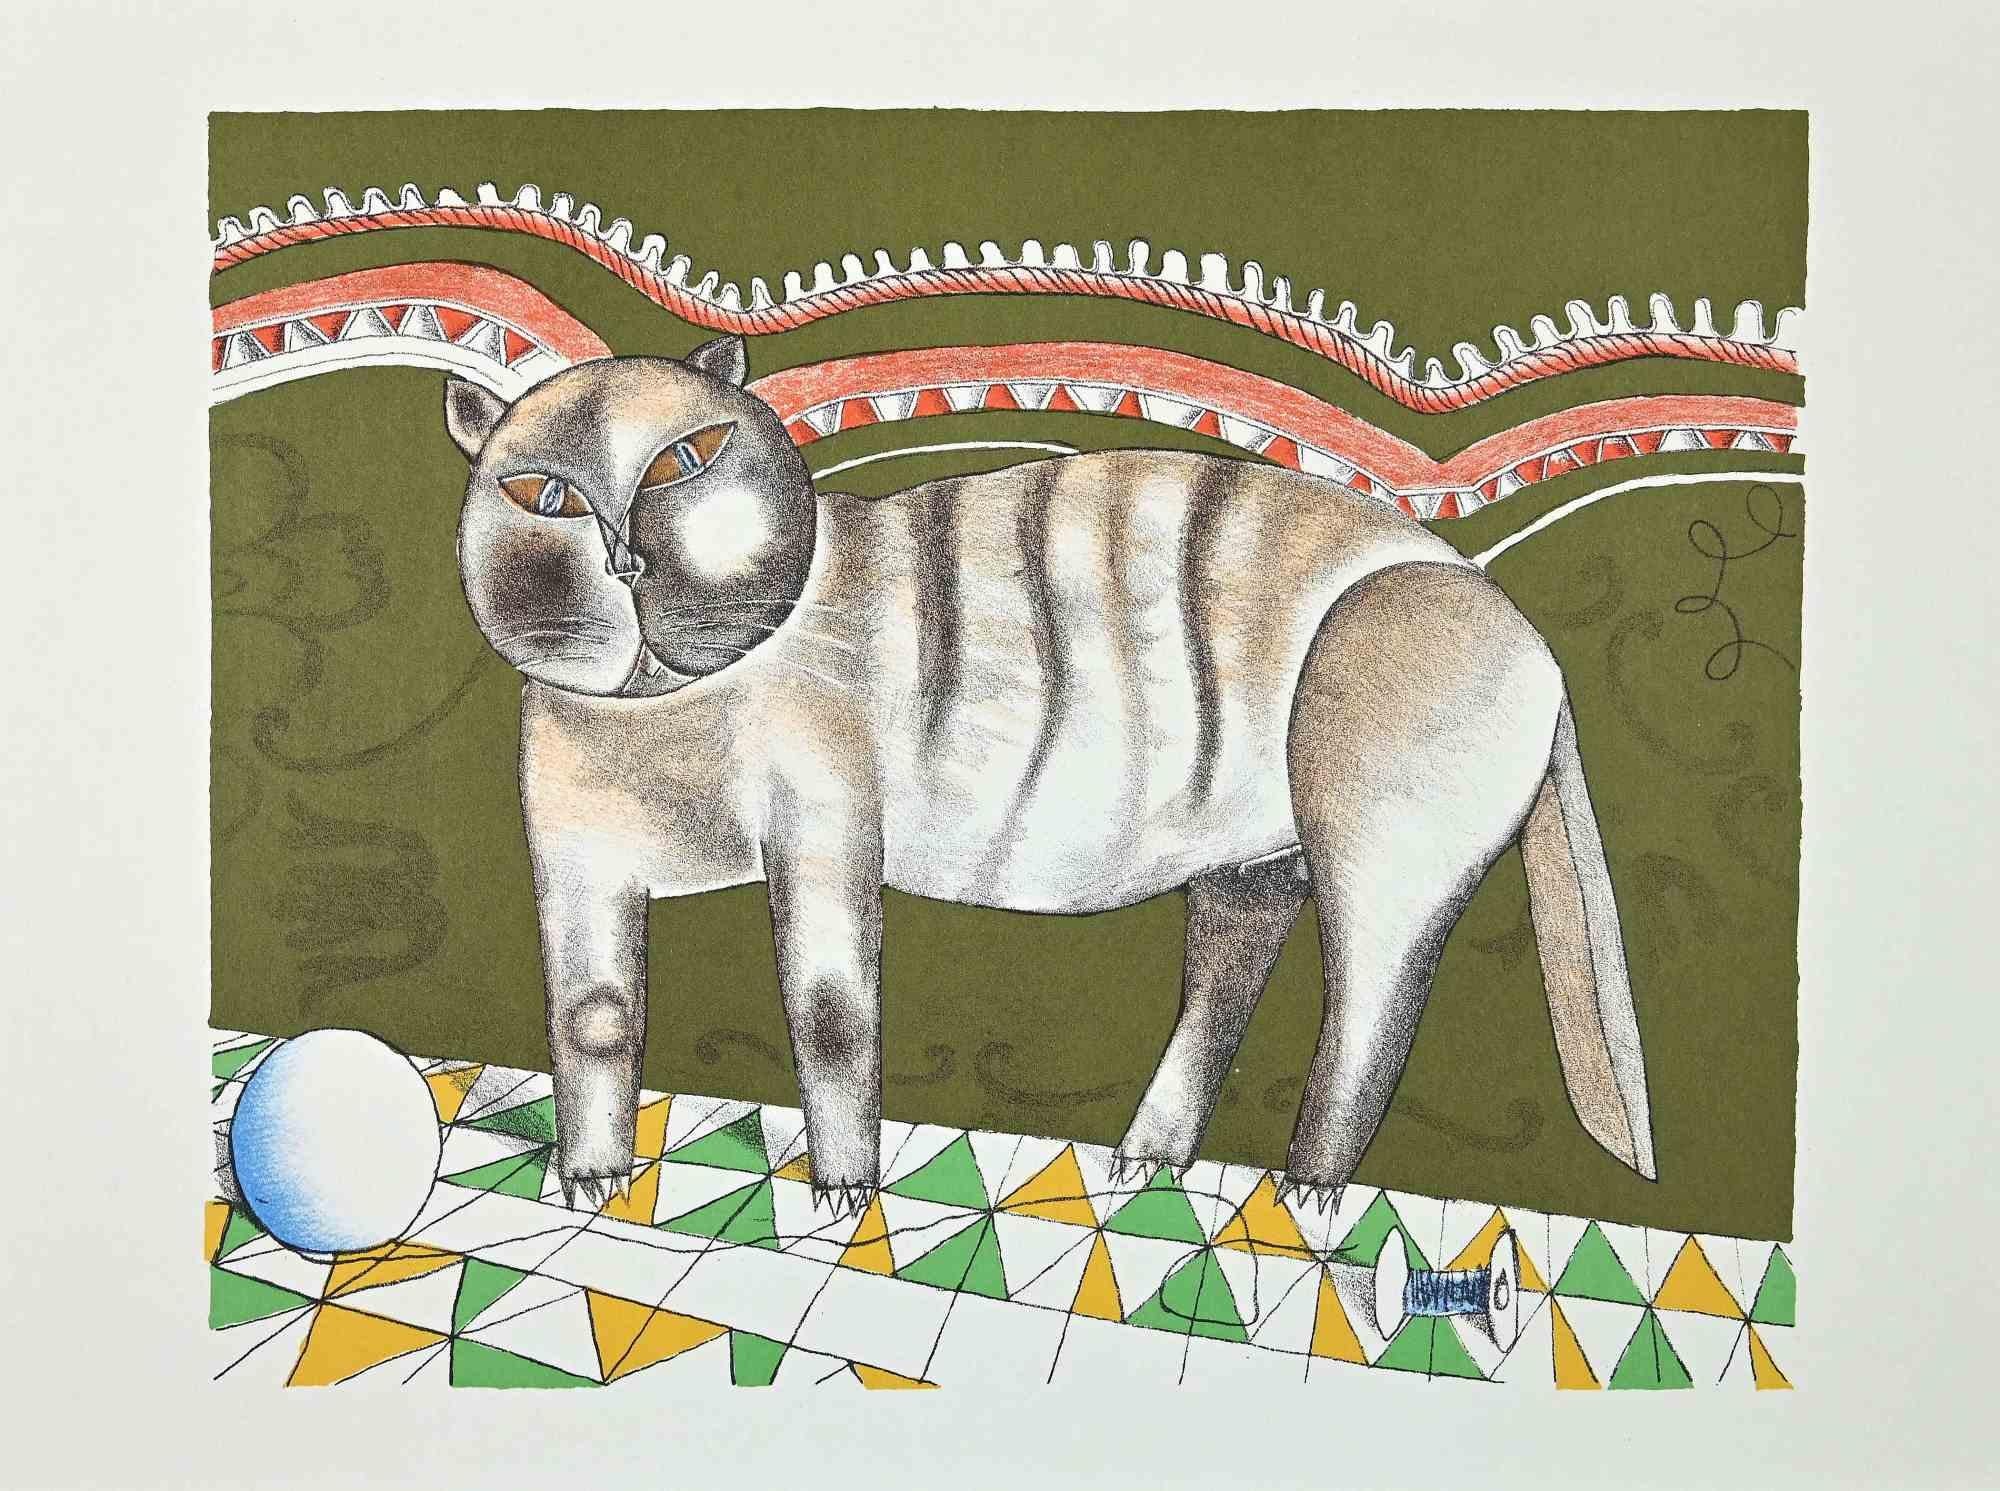 Die Katze ist ein originaler Vintage-Offsetdruck auf elfenbeinfarbenem Papier, der von Franco Gentilini (italienischer Maler, 1909-1981) in den 1970er Jahren realisiert wurde.

Der Erhaltungszustand der Kunstwerke ist ausgezeichnet.

Franco